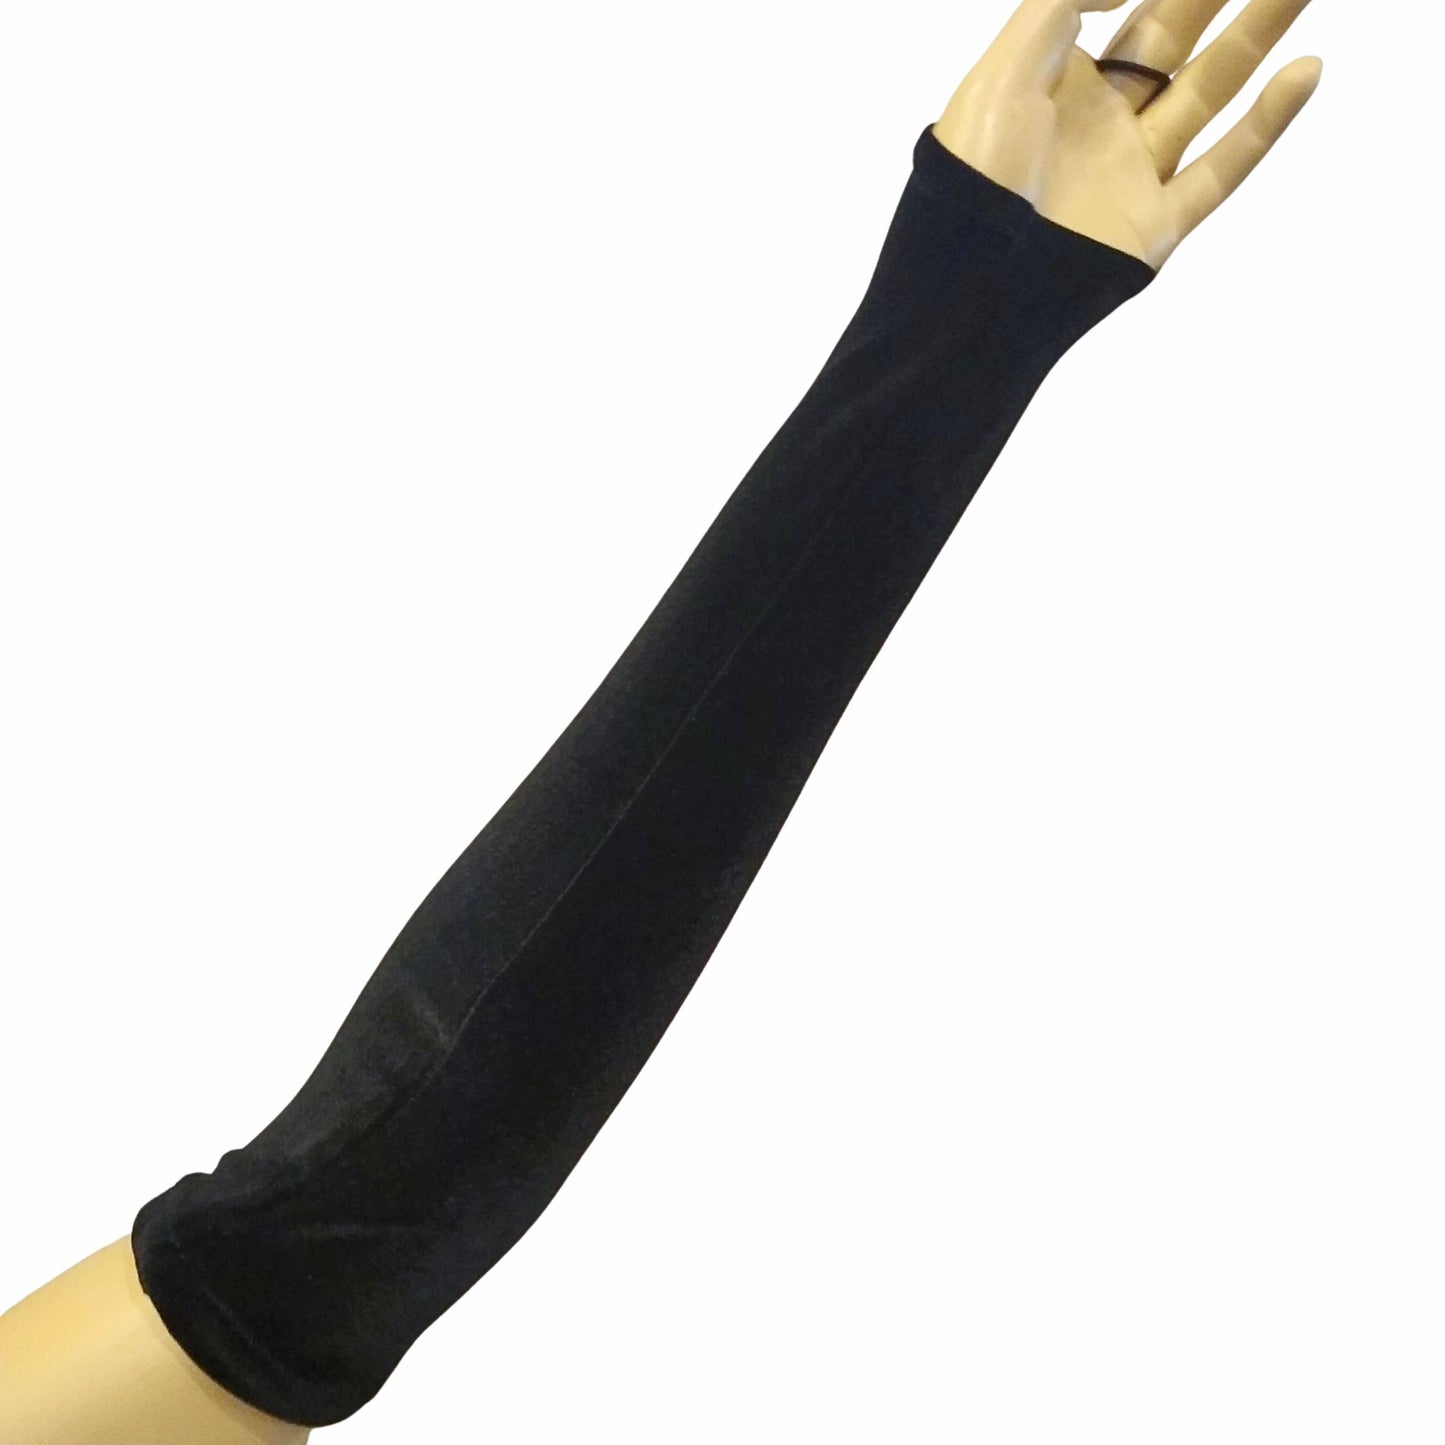 The VM Long Velvet Pointe Gloves